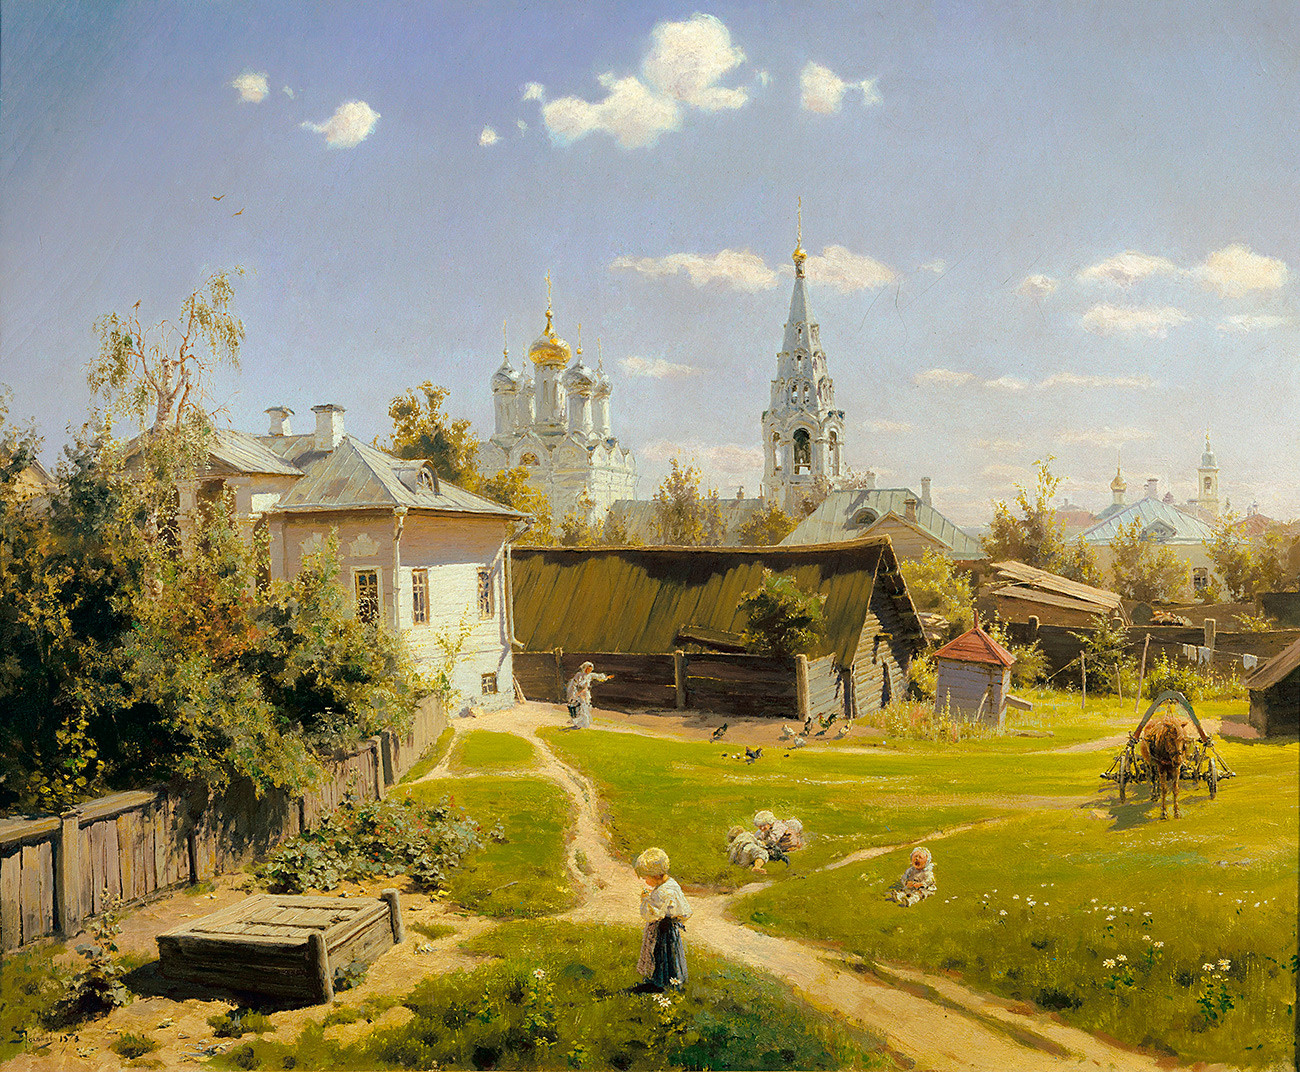 『モスクワの中庭』ワシーリー・ポレーノフ画